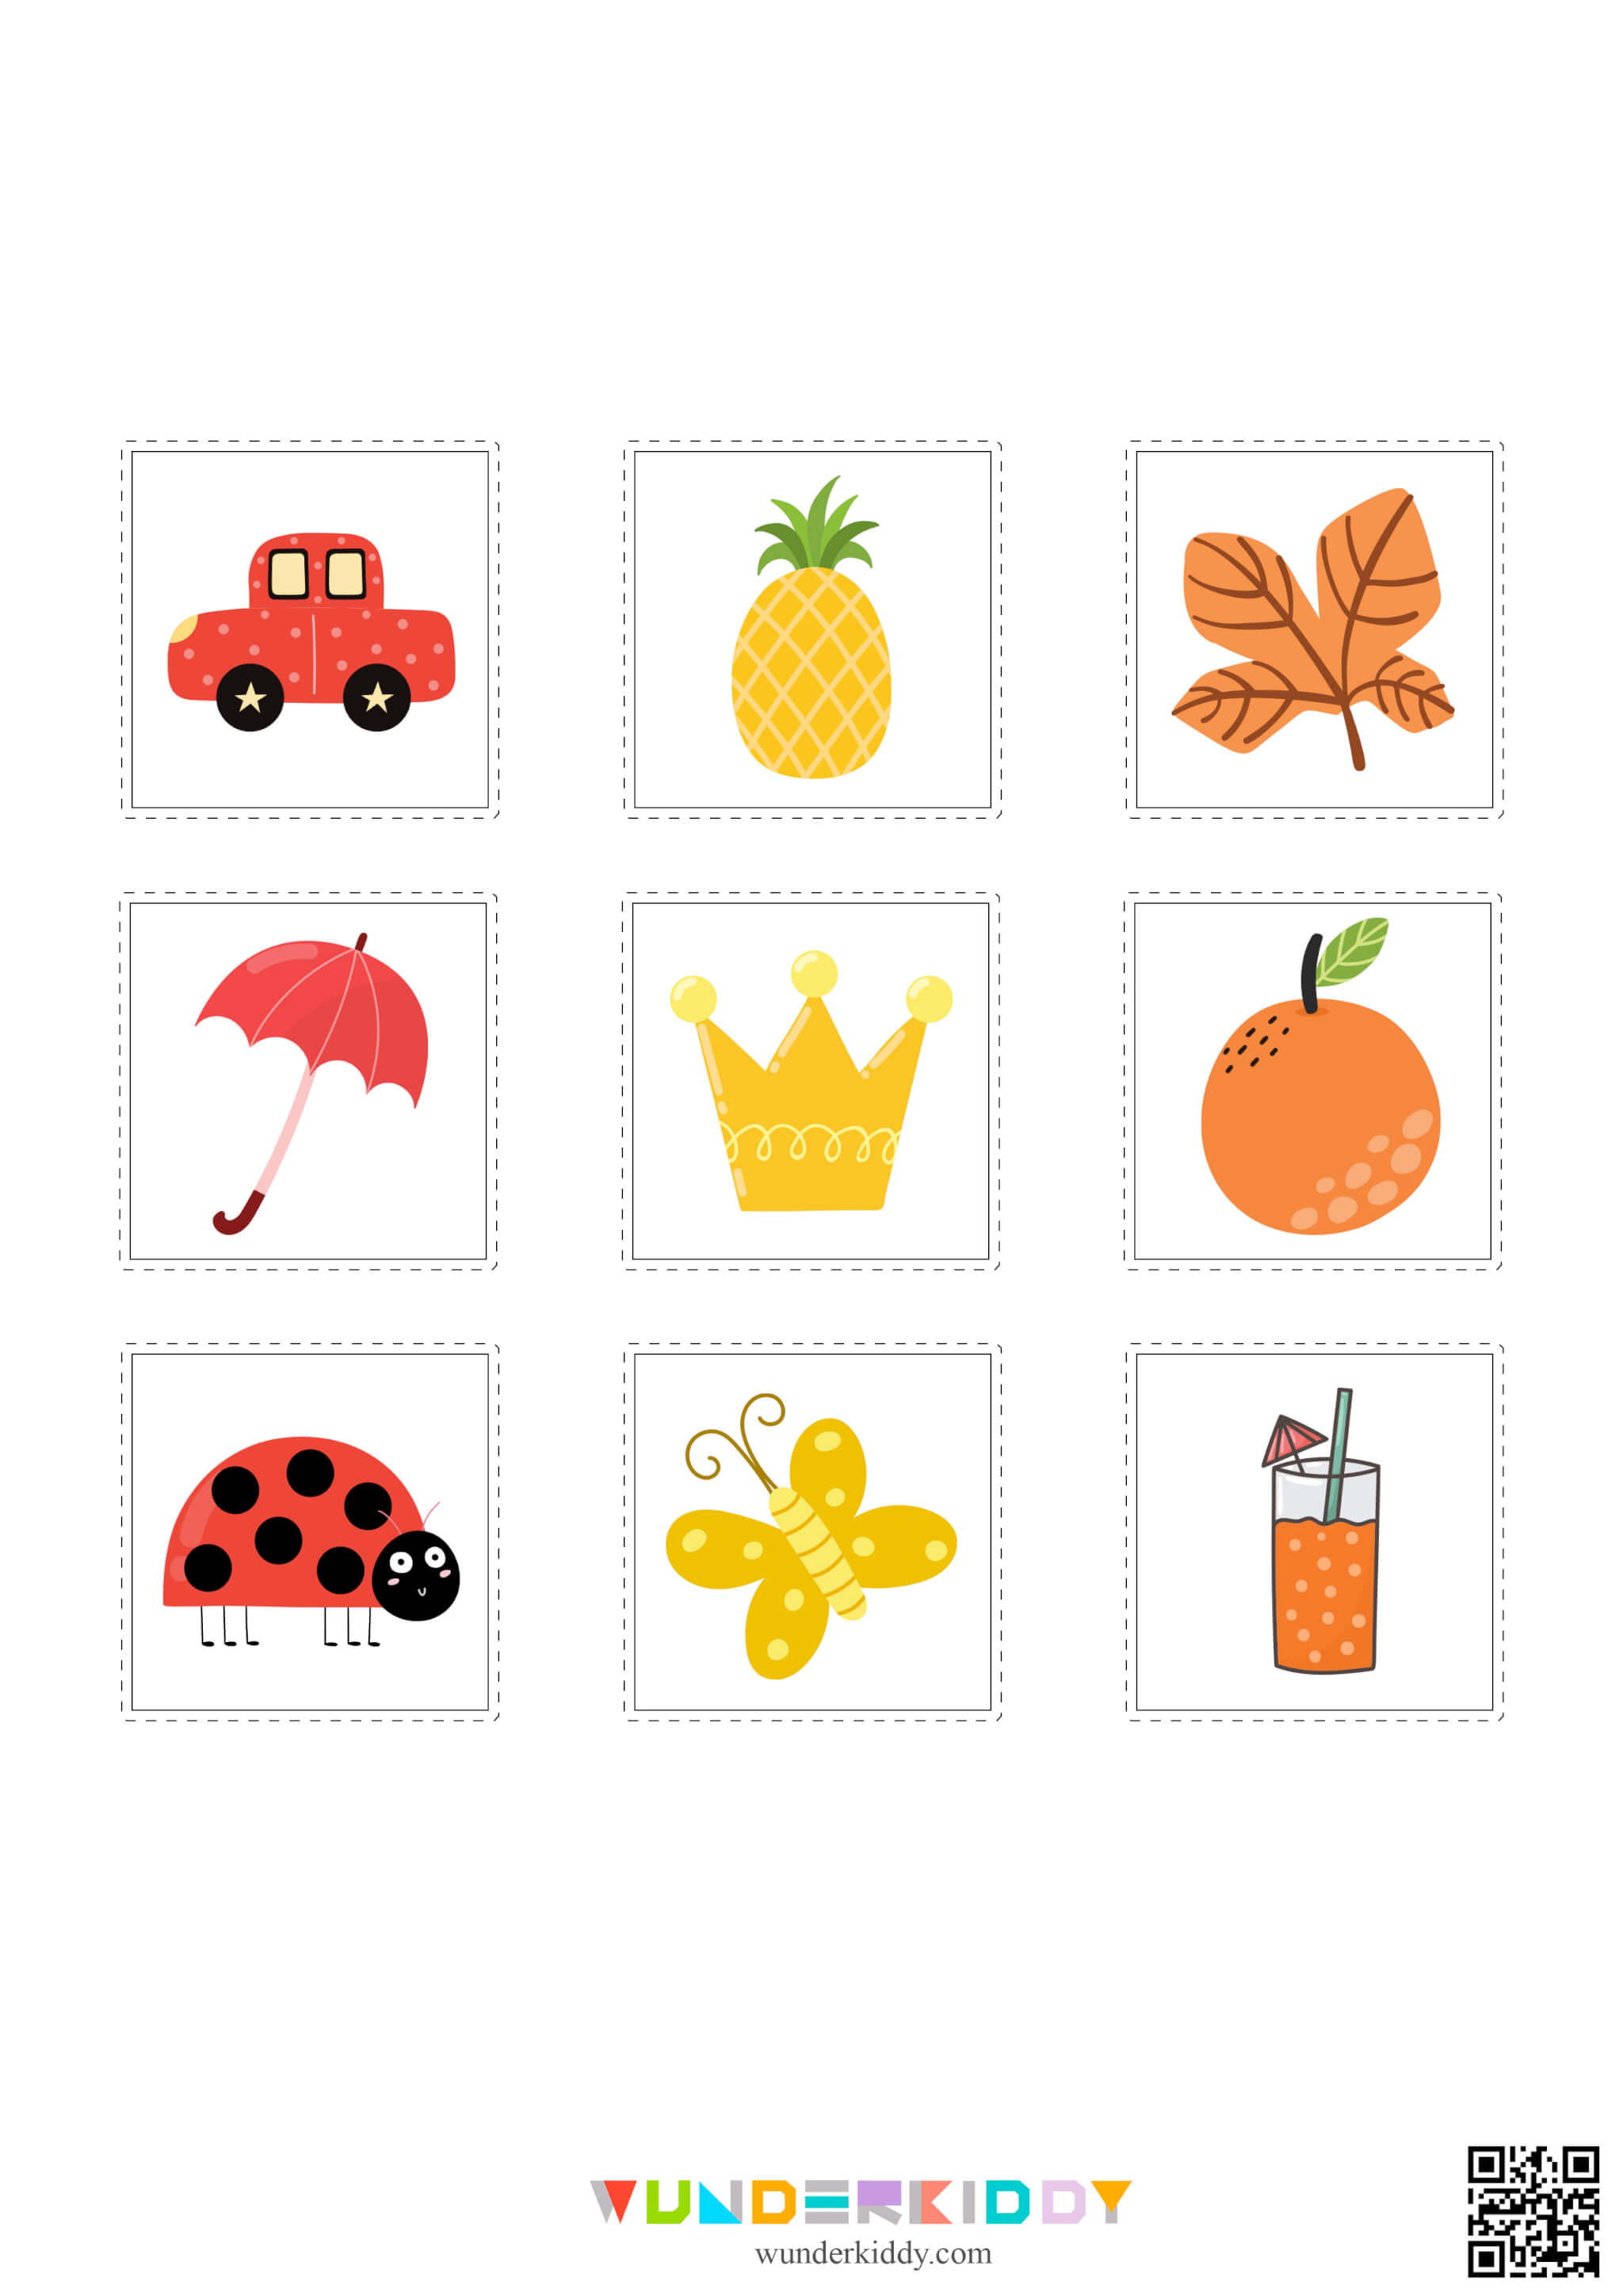 Color Matching Worksheets for Kindergarten - Image 5